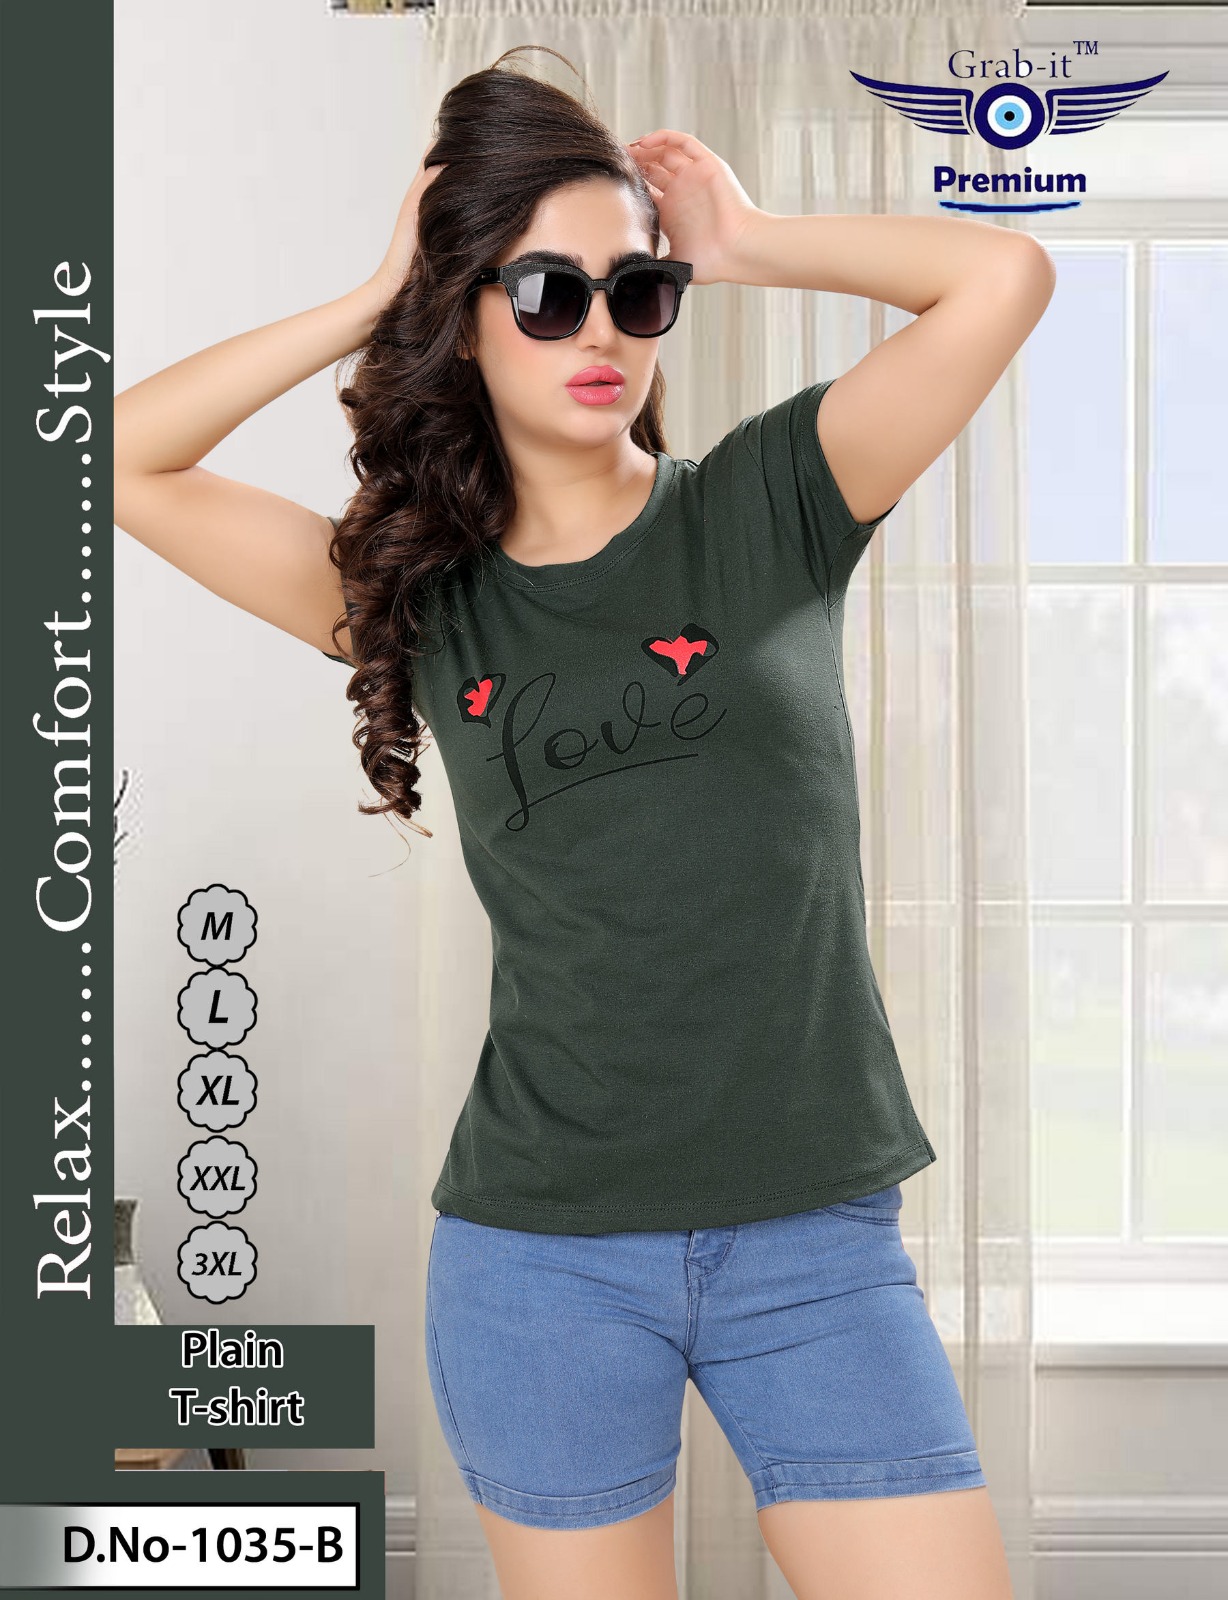 Grab It Vol No 1035 B Girls Tshirt Catalog Lowest Price